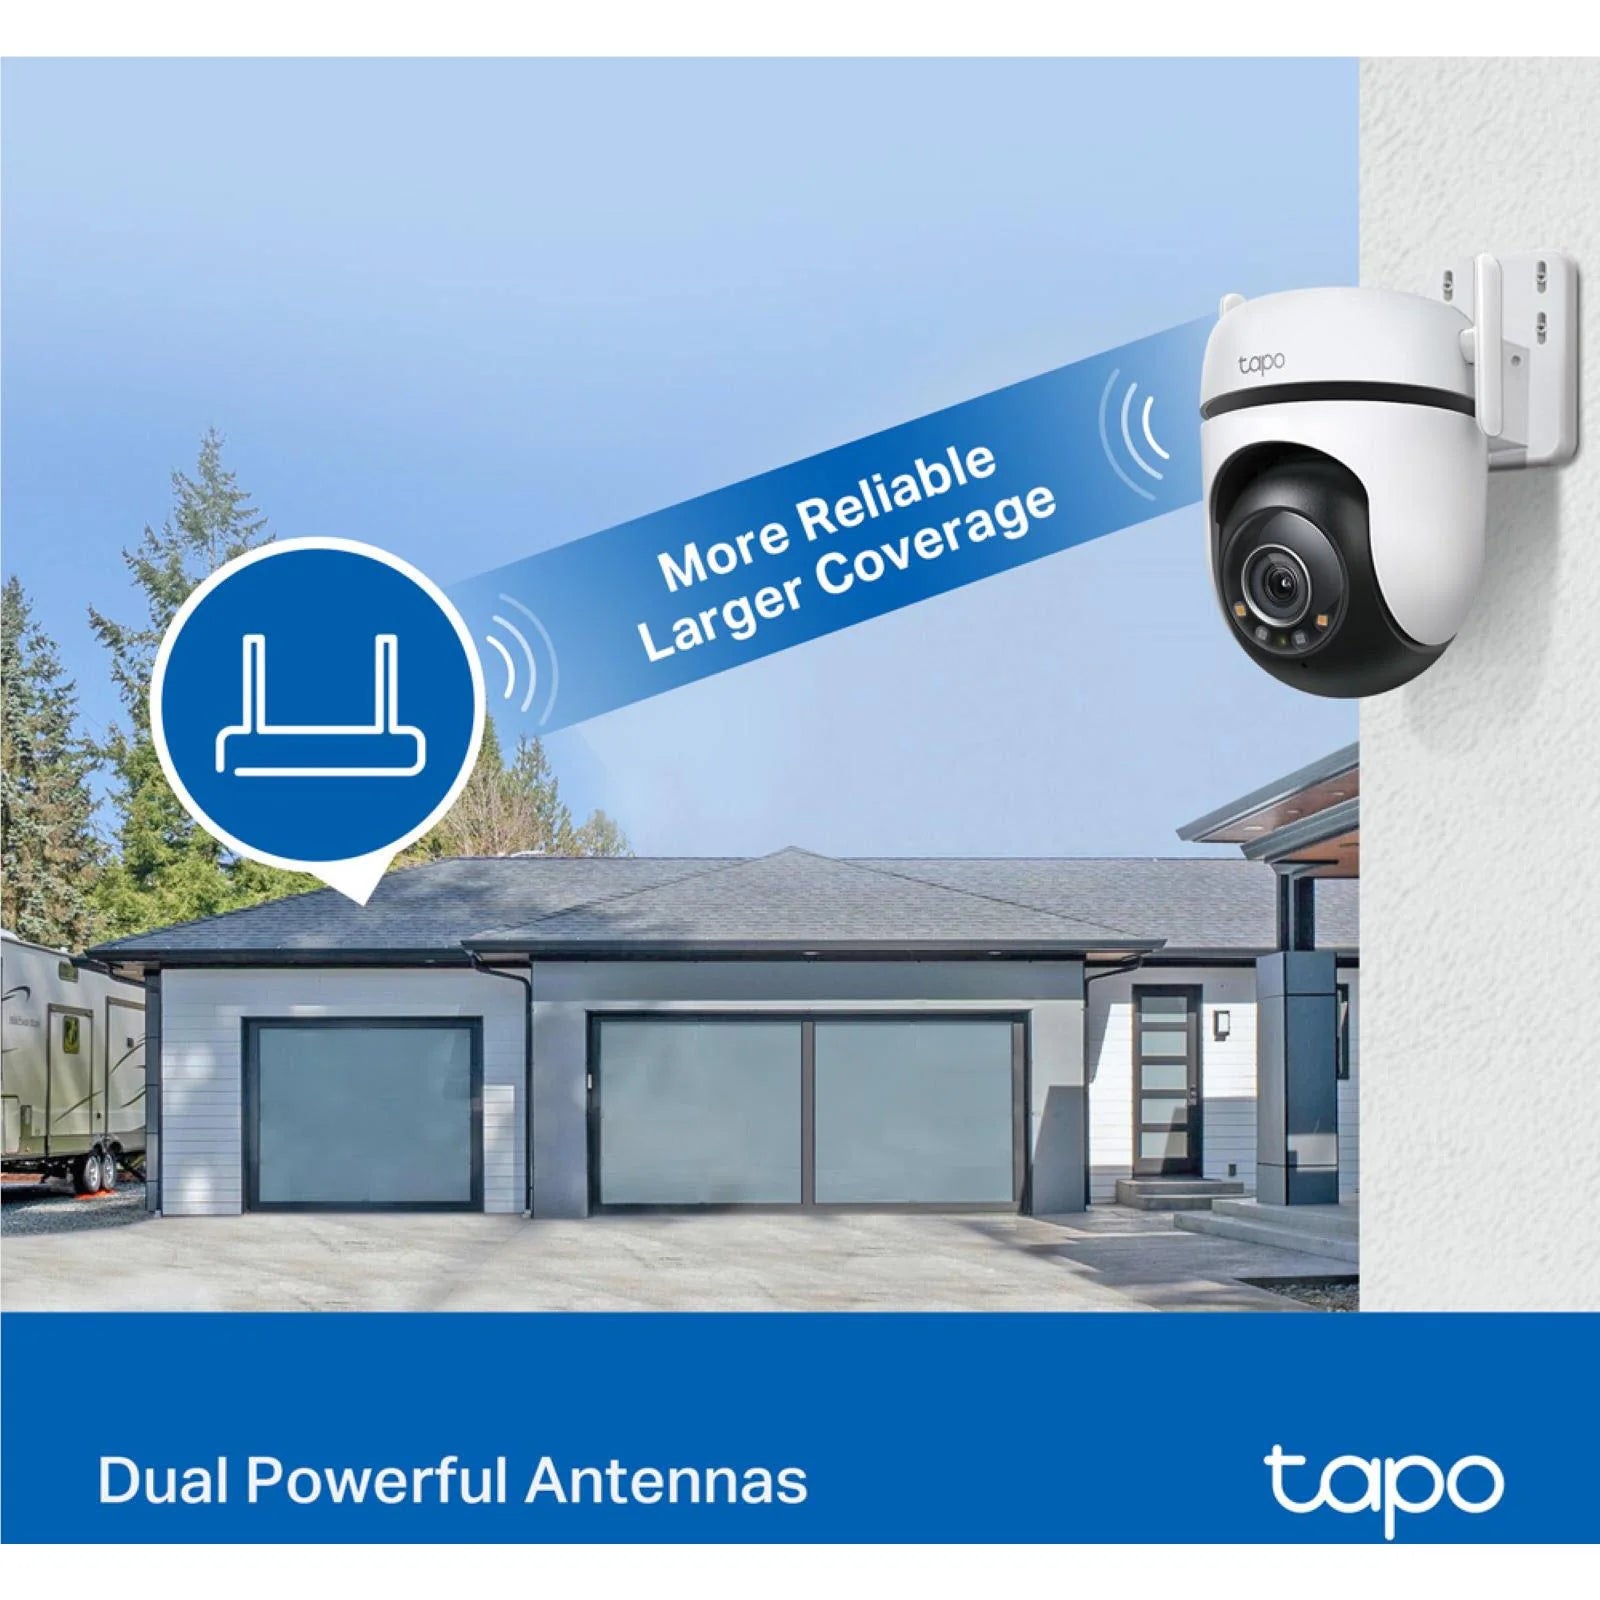 TP-Link Tapo 2K Outdoor Pan/Tilt Security Wi-Fi Camera